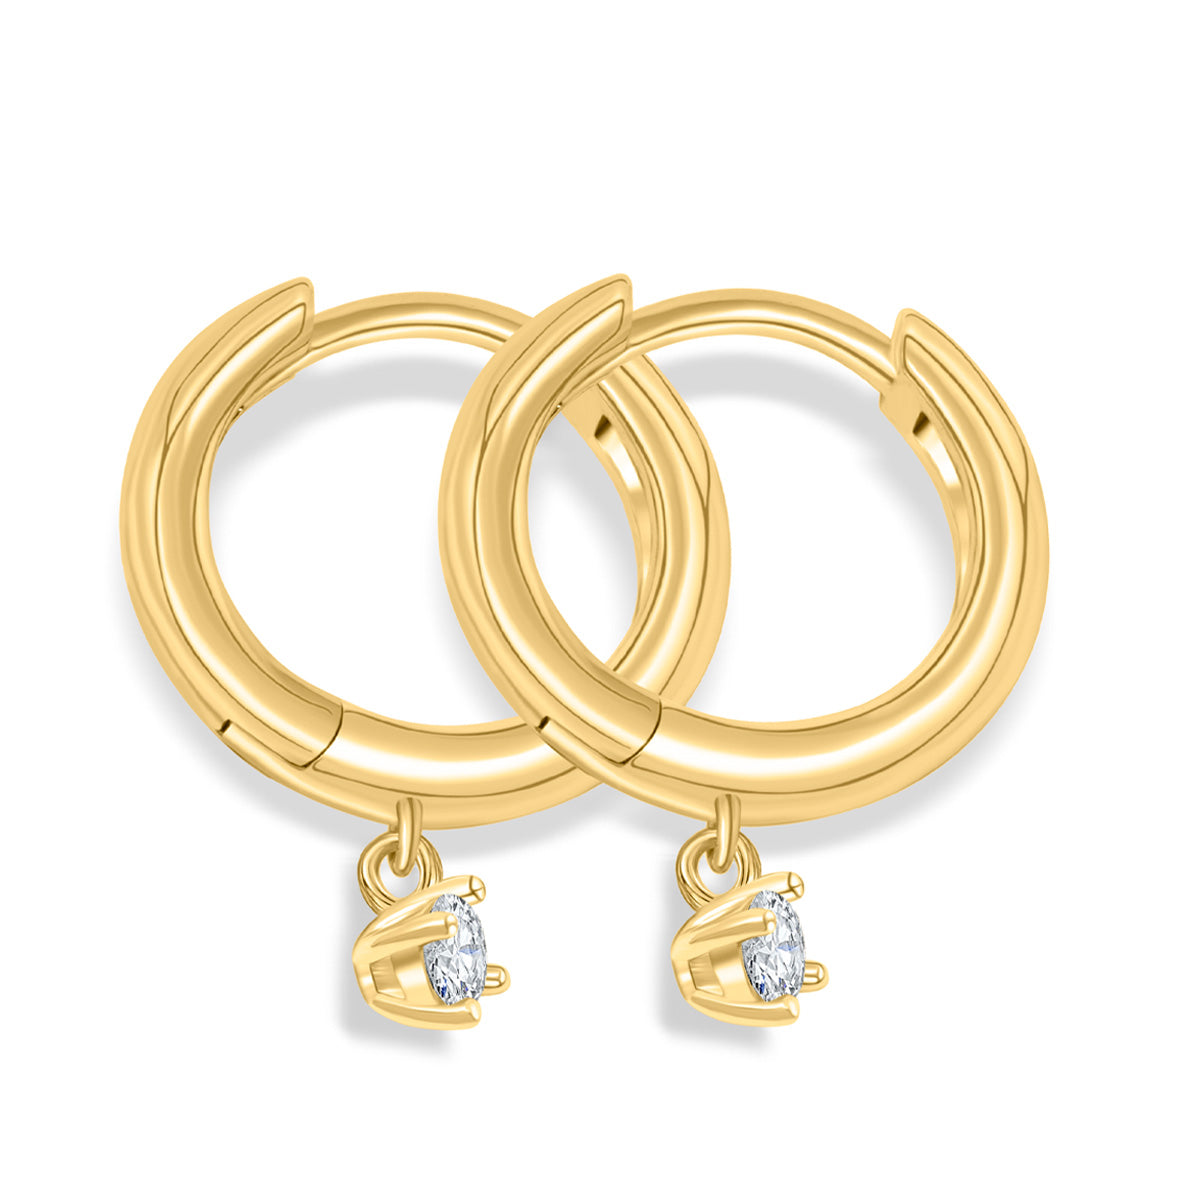 Shimmering gold plated hoop earrings